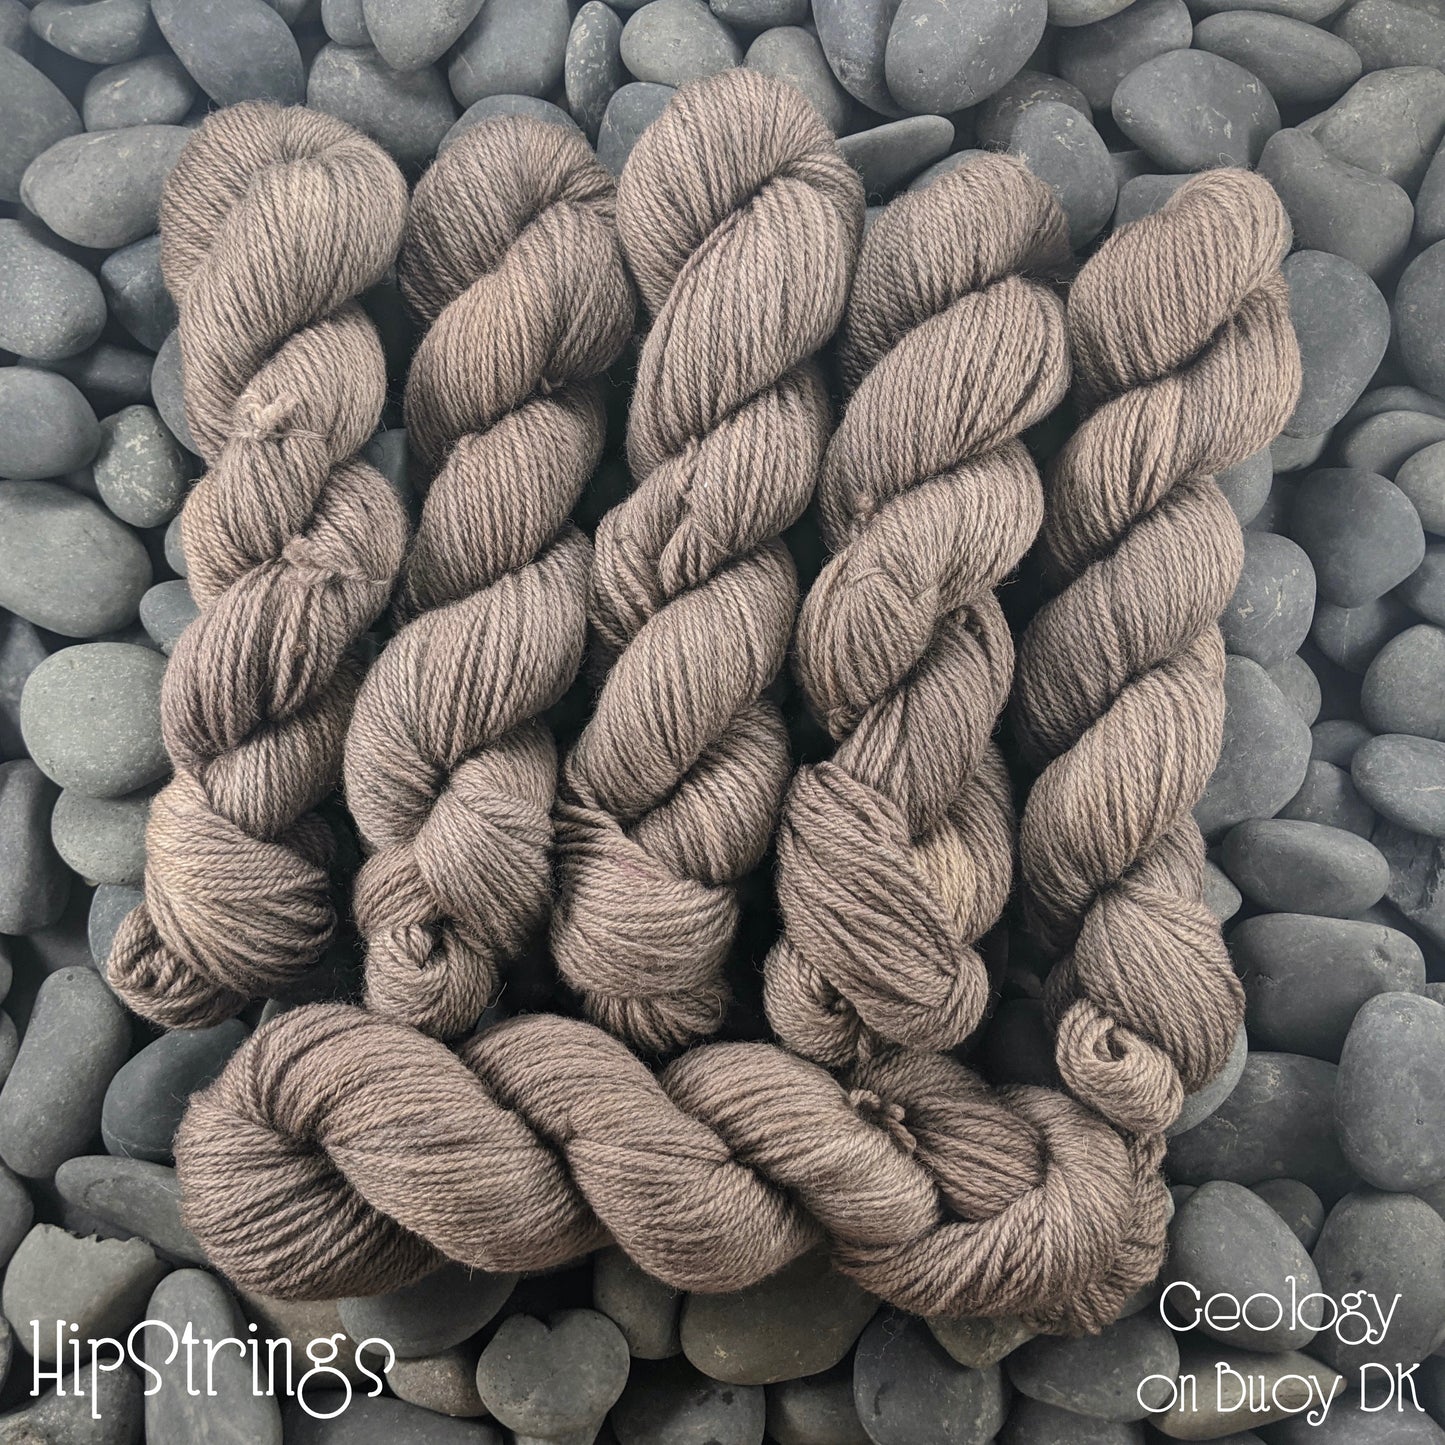 Geology on Buoy DK (BFL/Shetland/Manx wool) yarn - 100 g